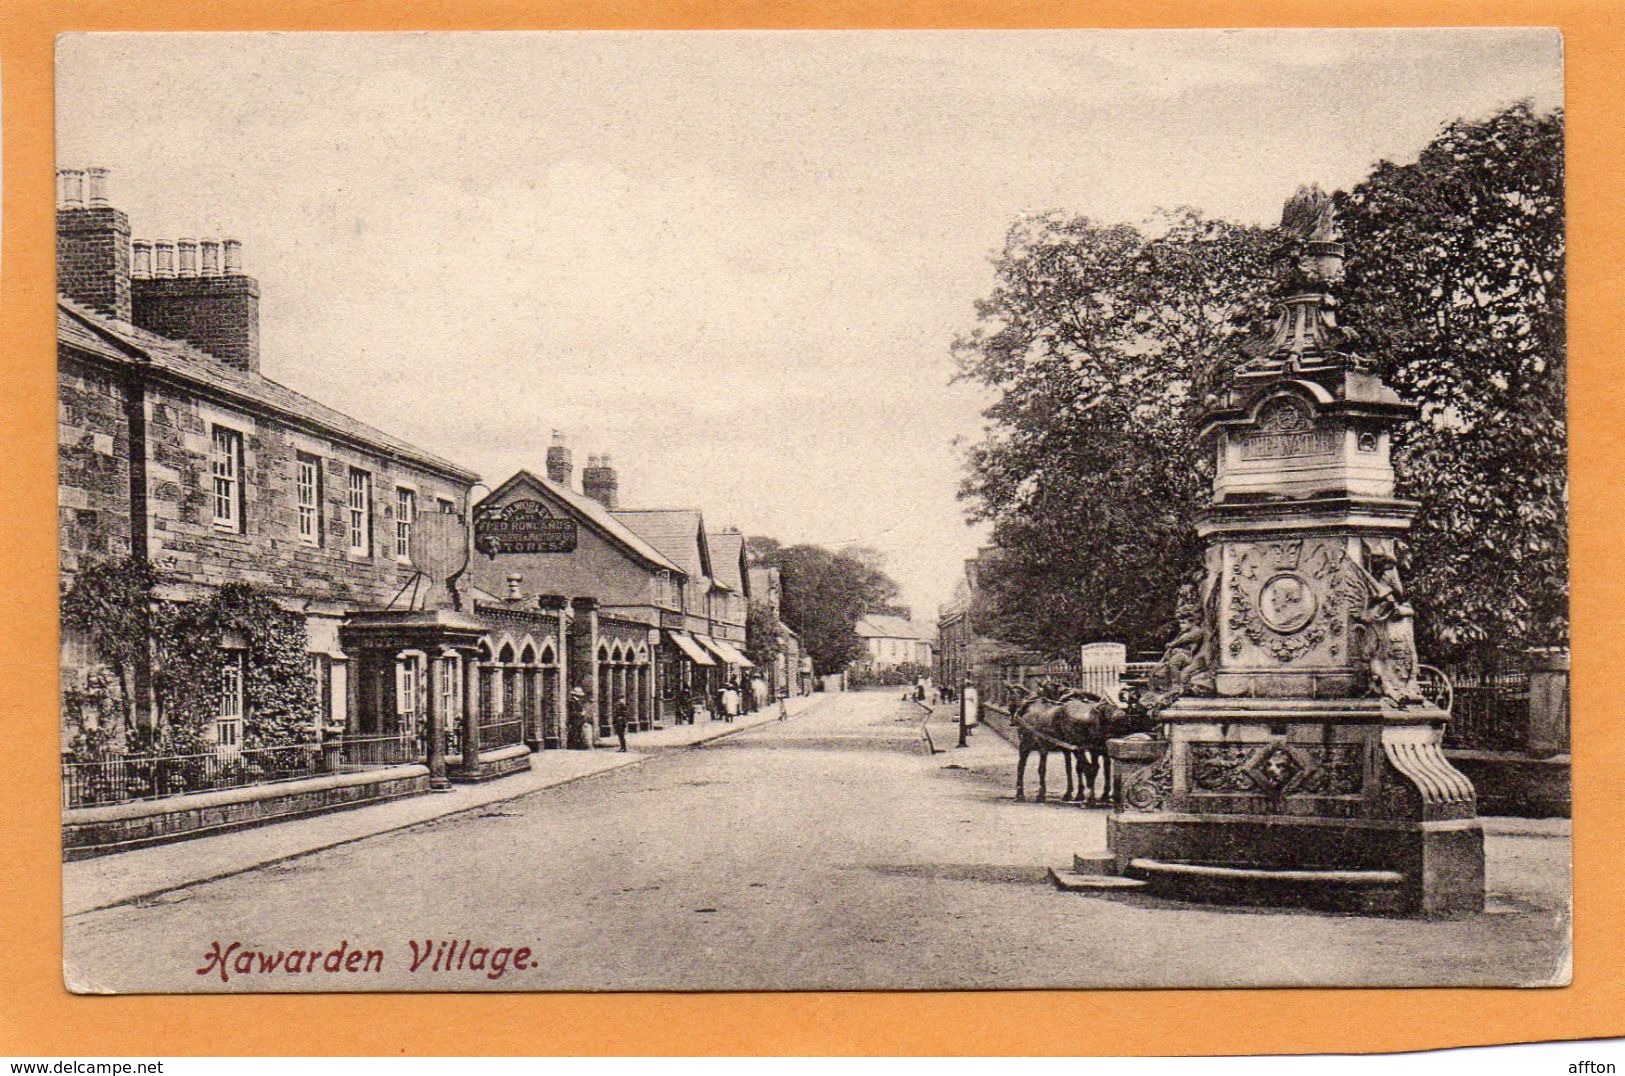 Hawarden Village 1905 Postcard - Flintshire